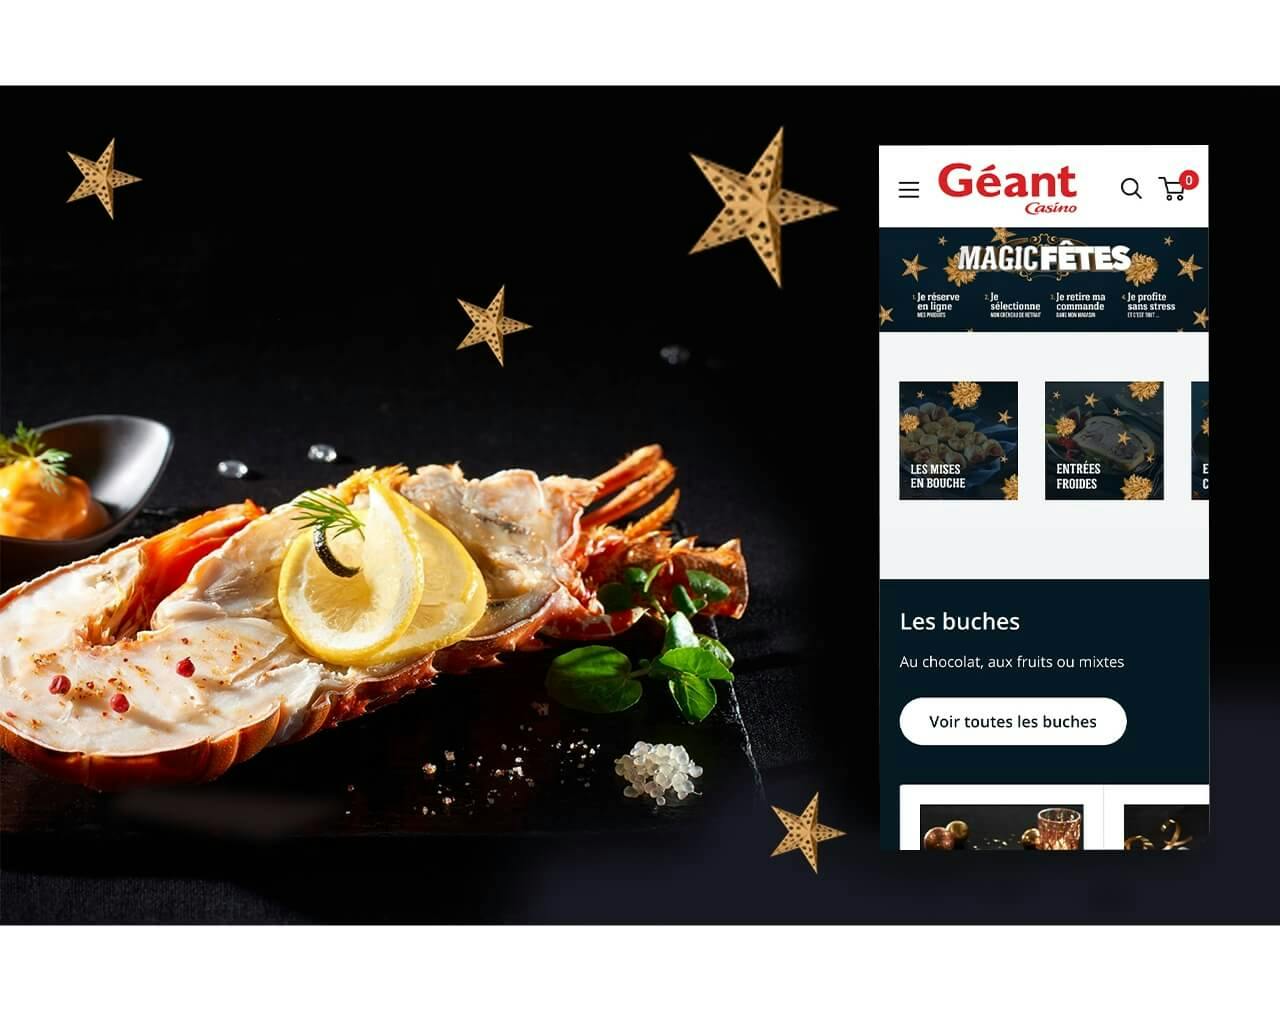 La page d'acceuil du site internet de Géant Casino mis en scène devant un plat de repas de fetes de fin d'année